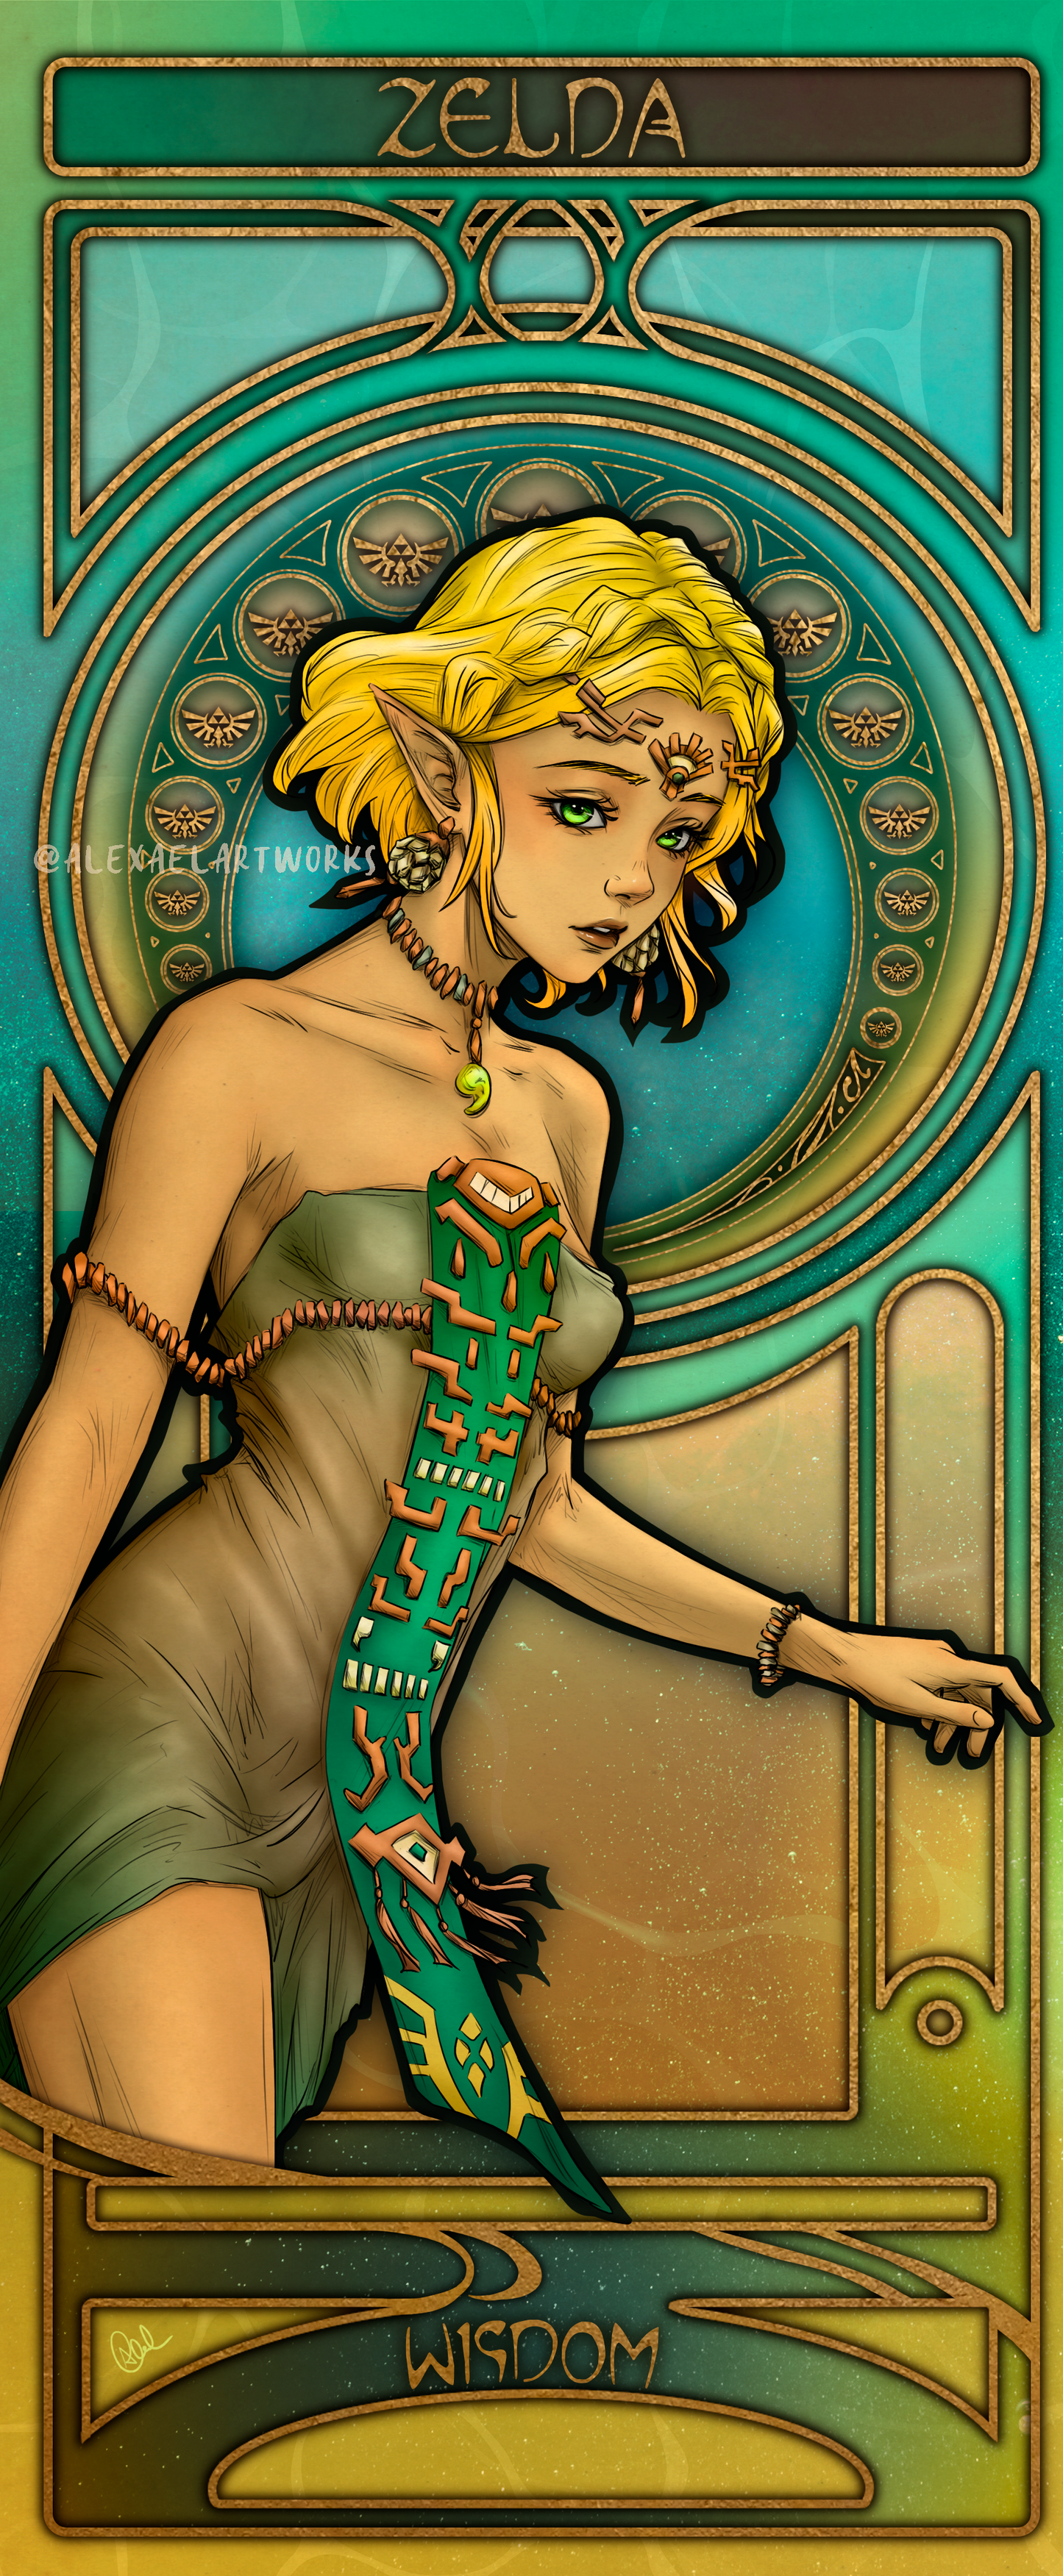 Zelda & Link in Art Nouveau style